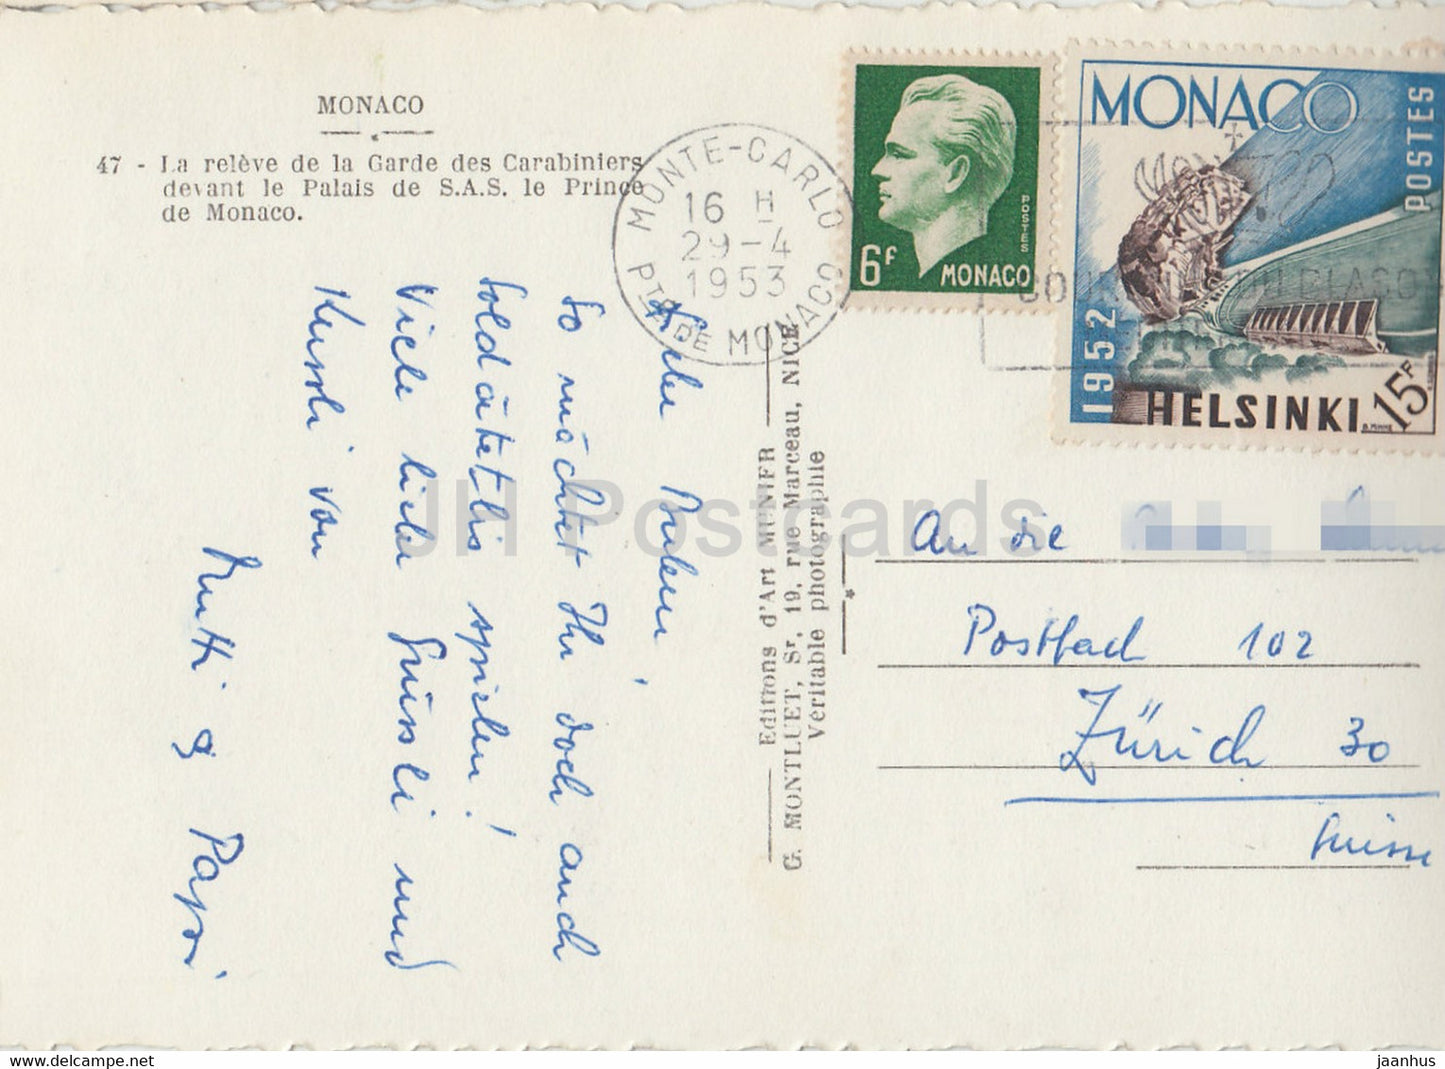 La relevée de la Garde des Carabiniers devant le Palais de SAS le Prince de Monaco - carte postale ancienne - 1953 - Monaco - occasion